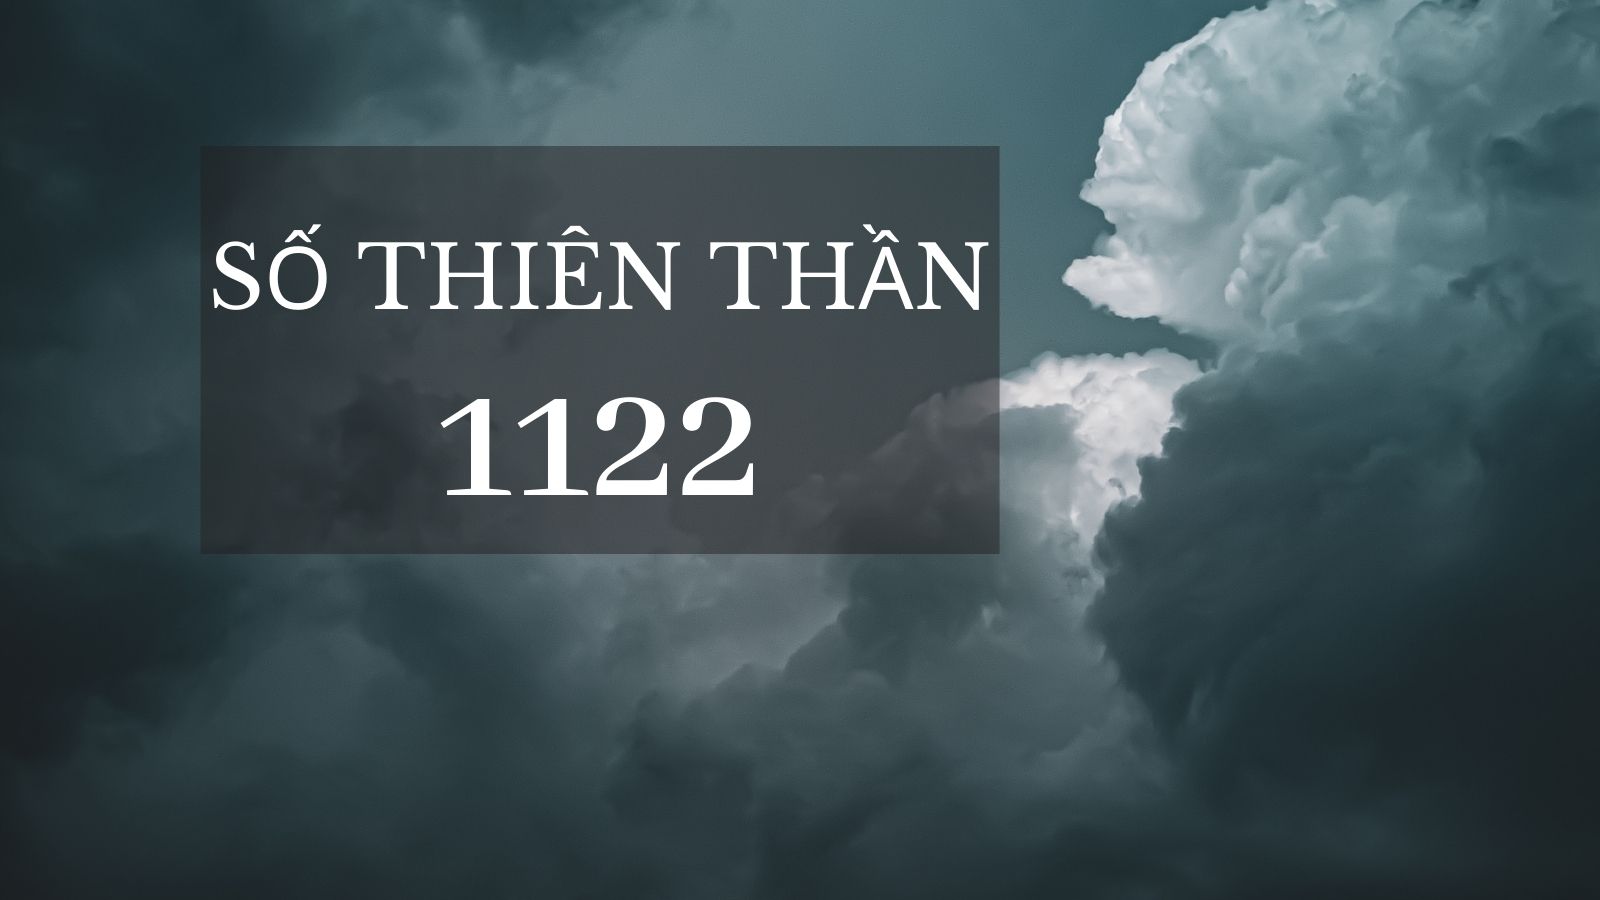 Số Thiên Thần 1122 mang đến những cơ hội mới trong cuộc sống của bạn